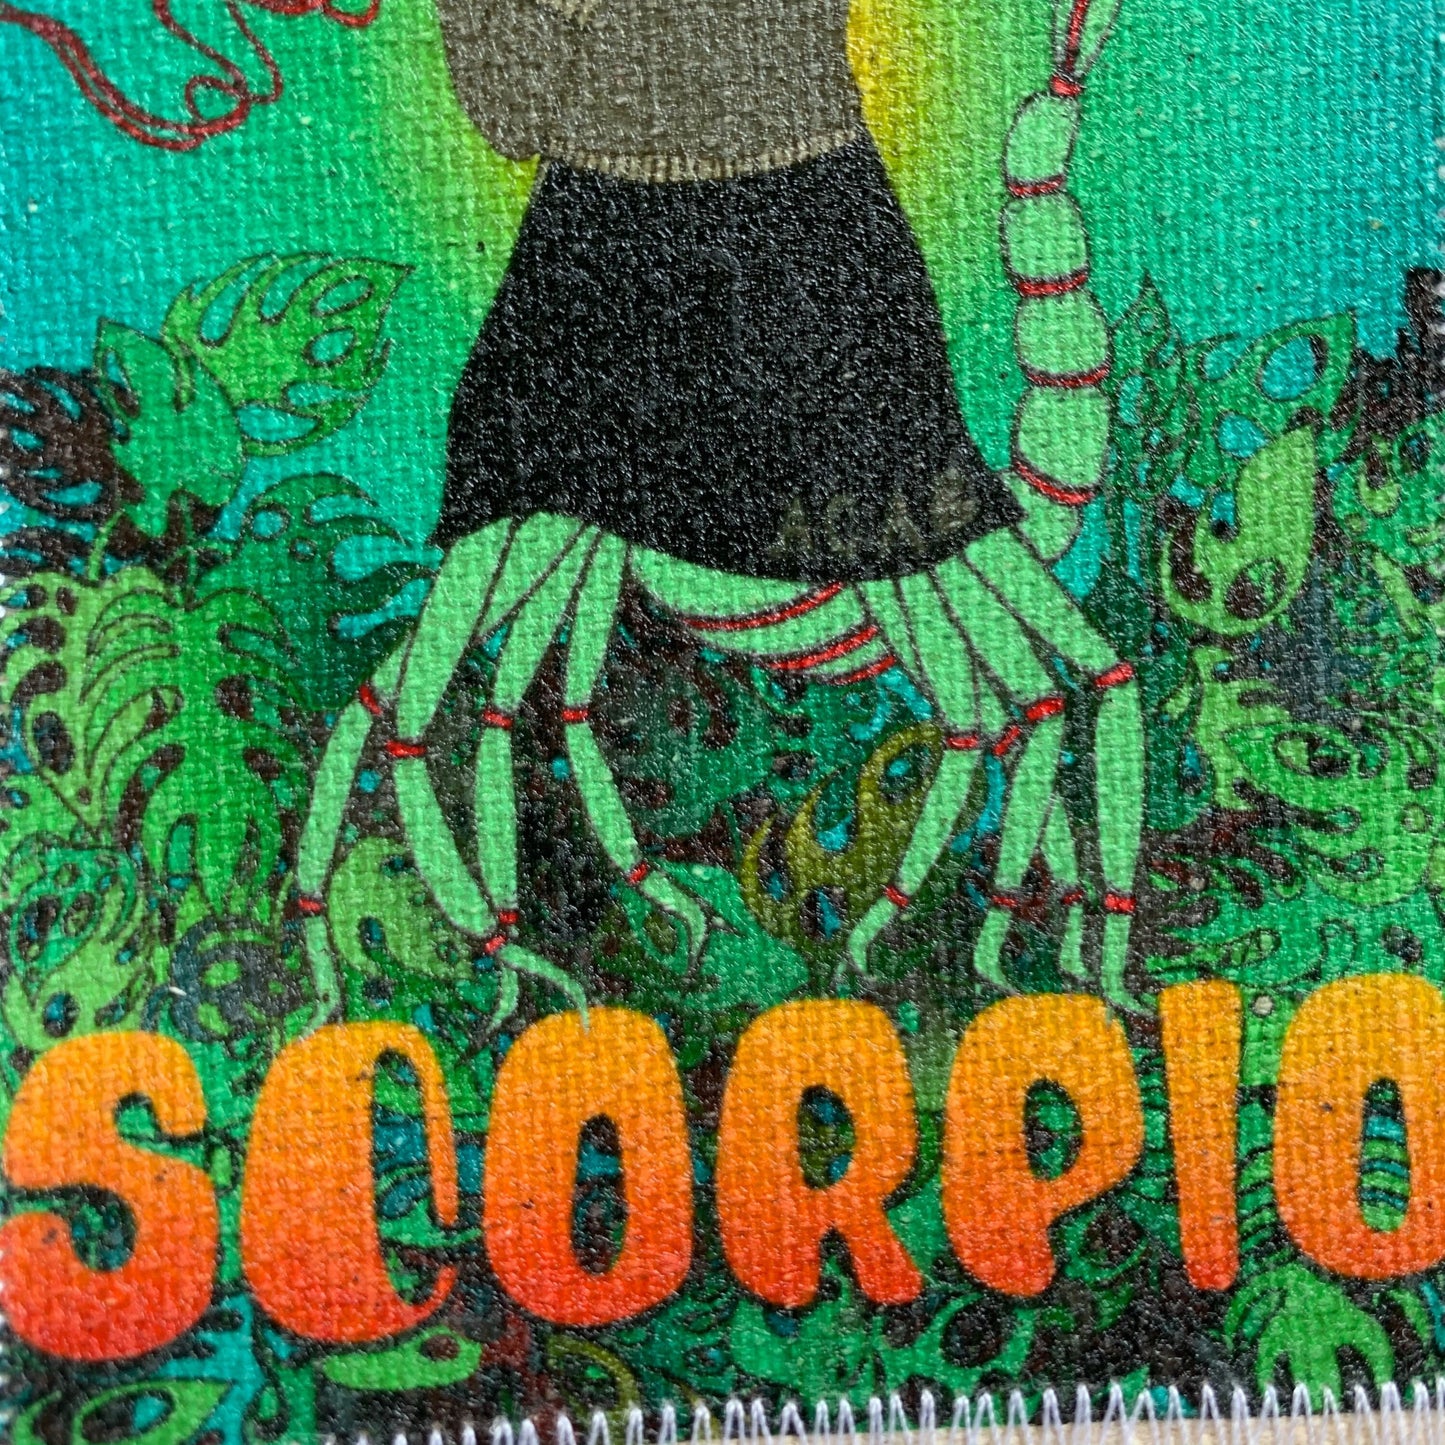 Scorpio patch